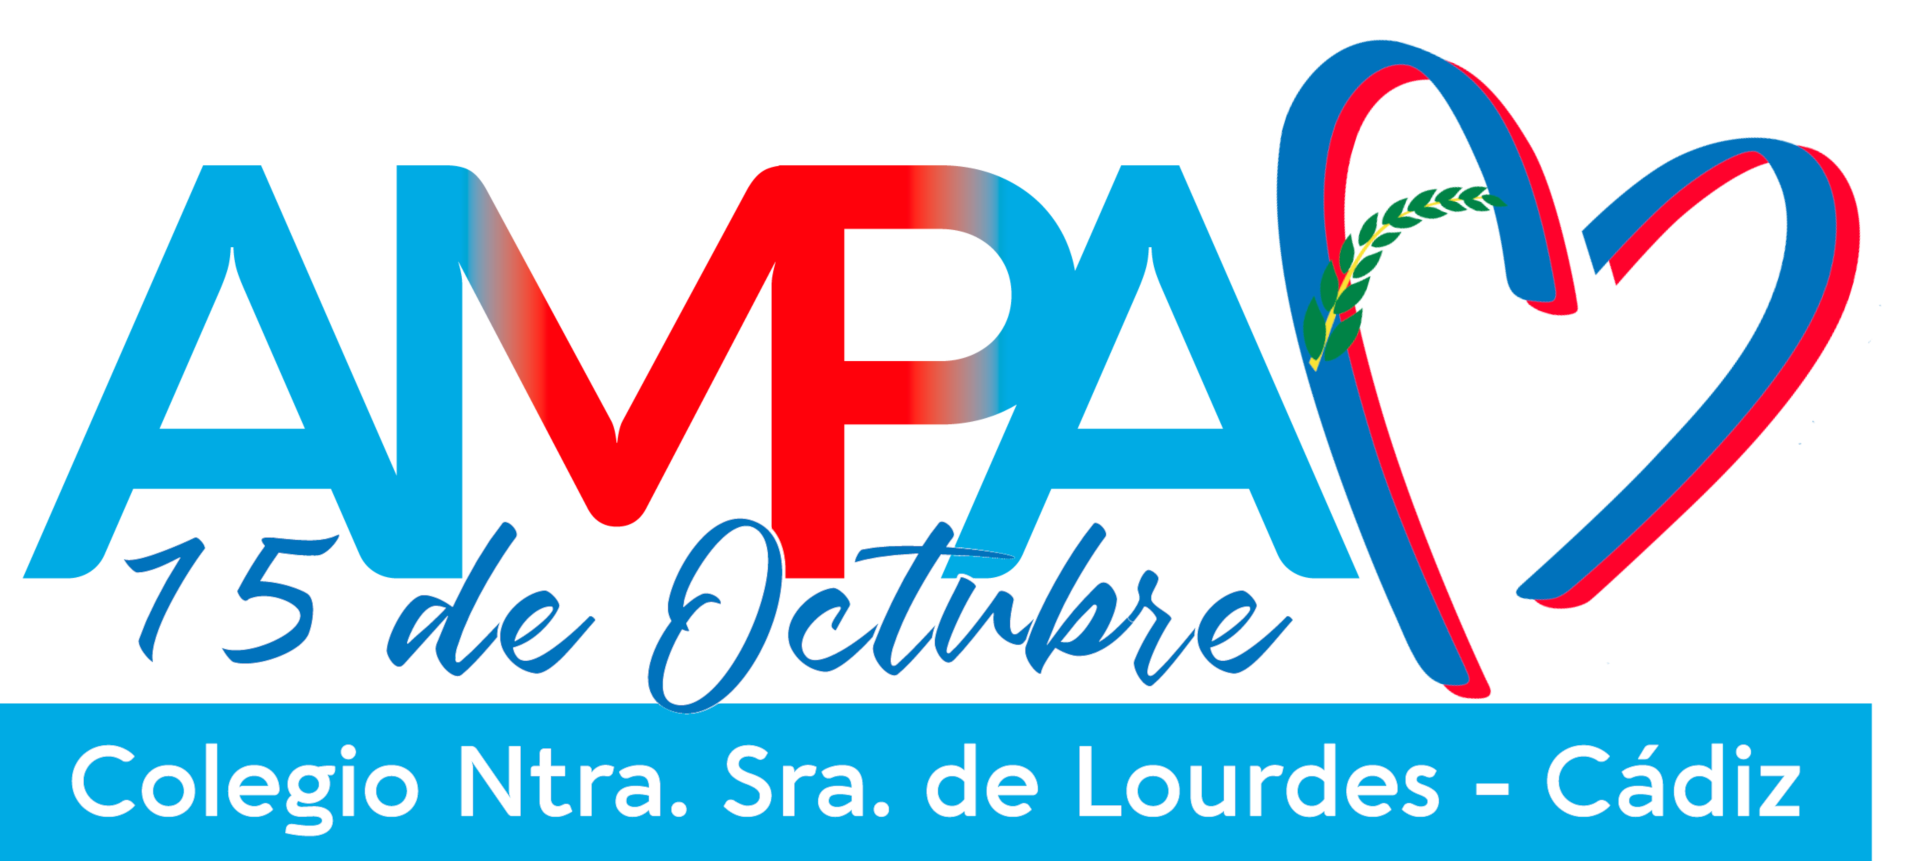 Logotipo Ampa 15 de Octubre